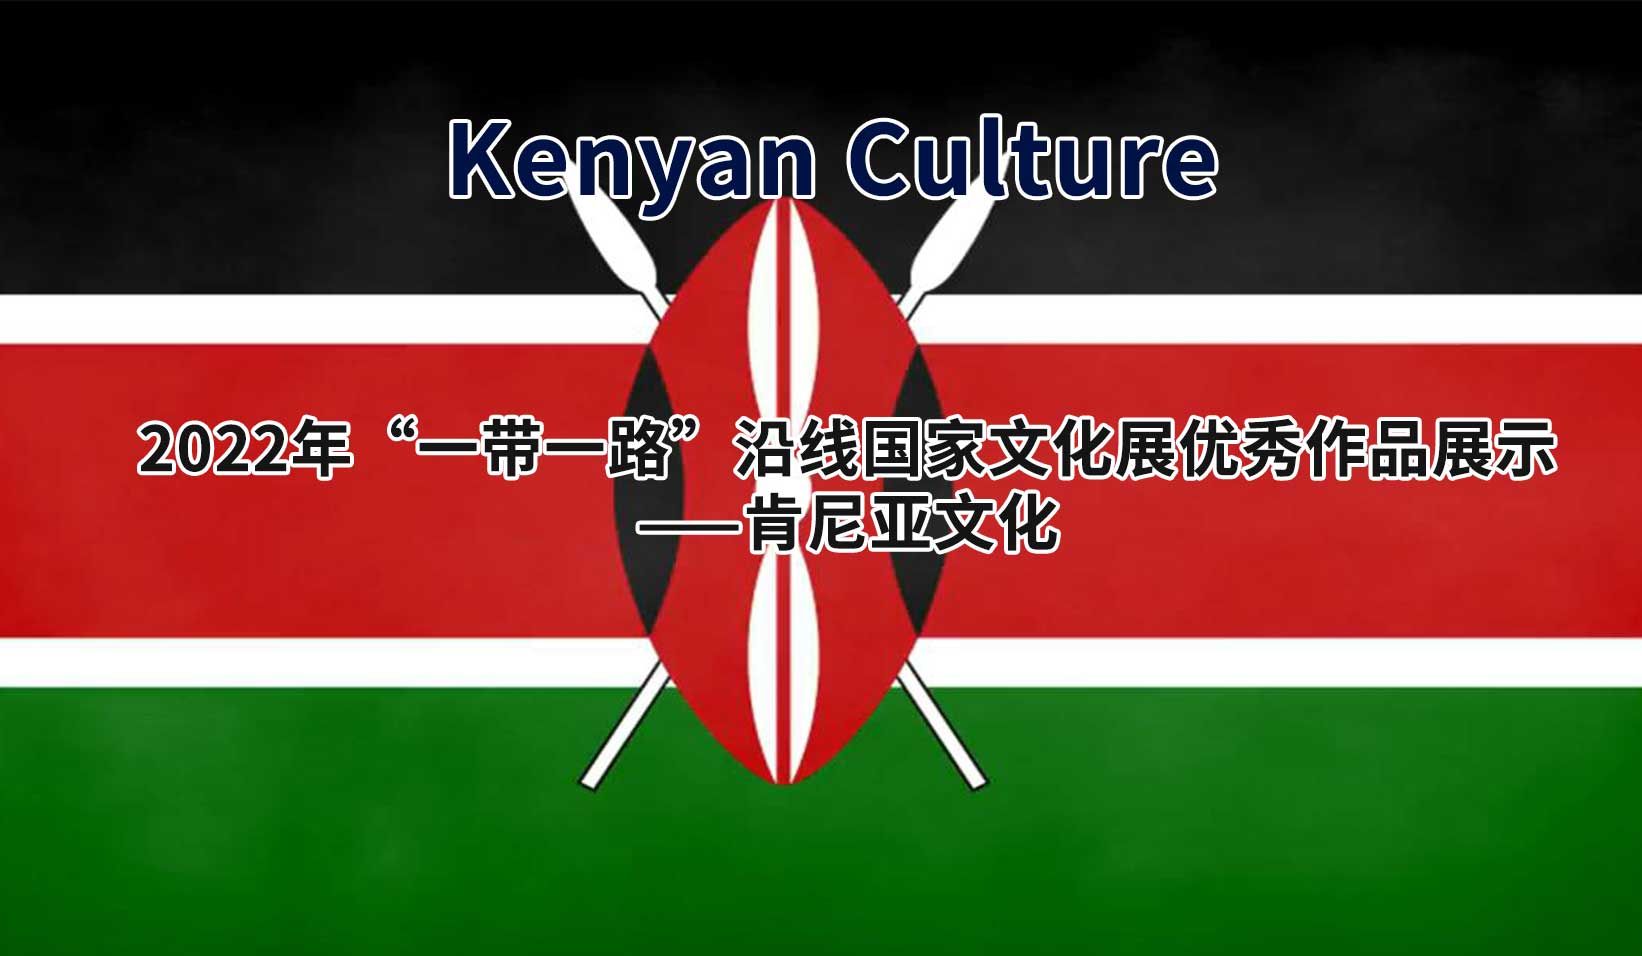 2022年“一带一路”沿线国家文化展优秀作品展示——肯尼亚文化